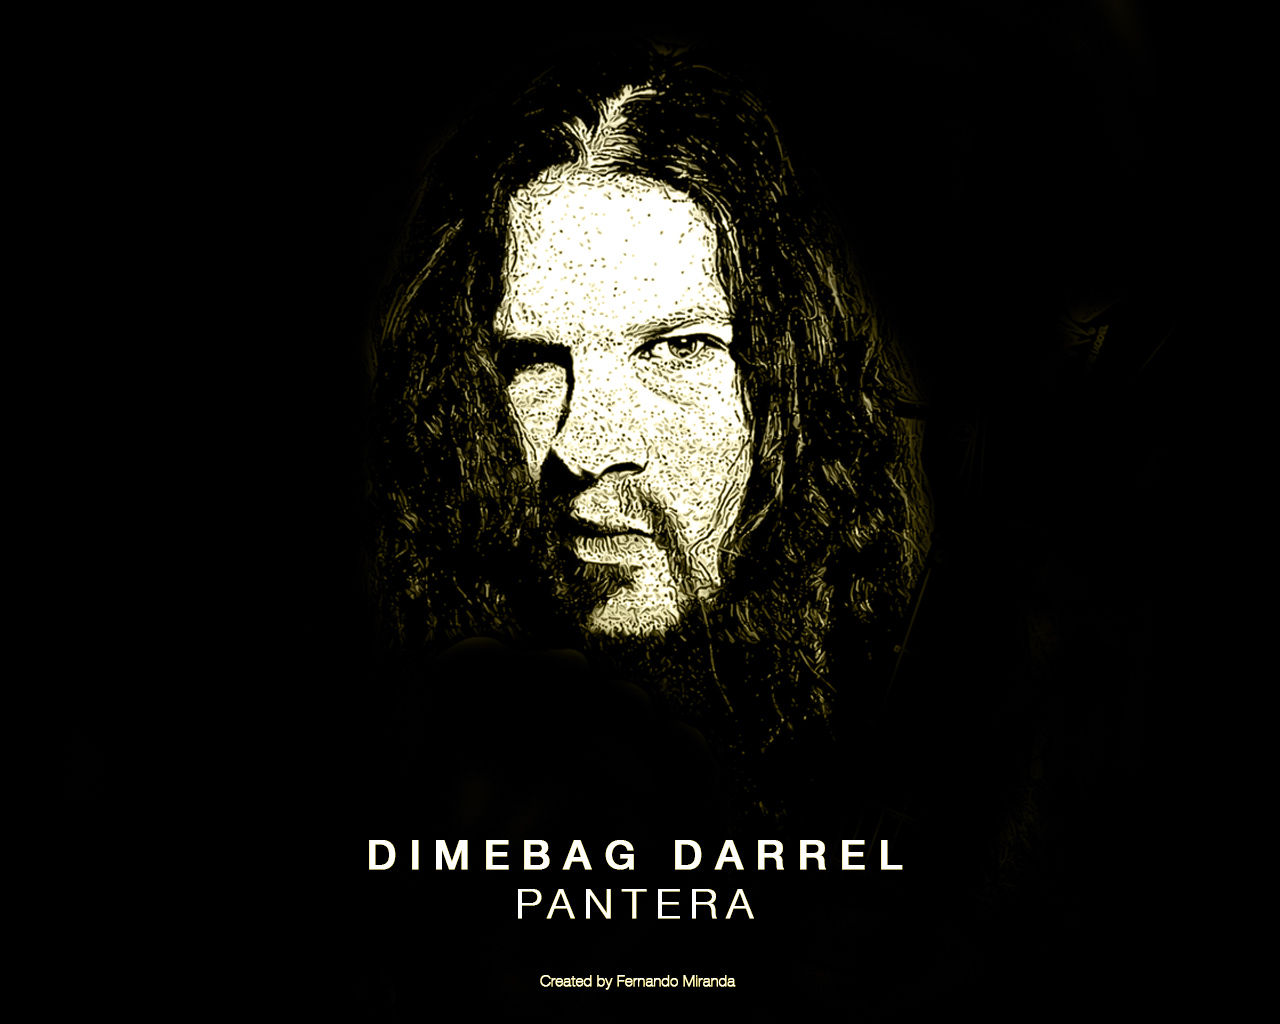 Dimebag Darrel Pantera Bandswallpapers Free Wallpapers Music